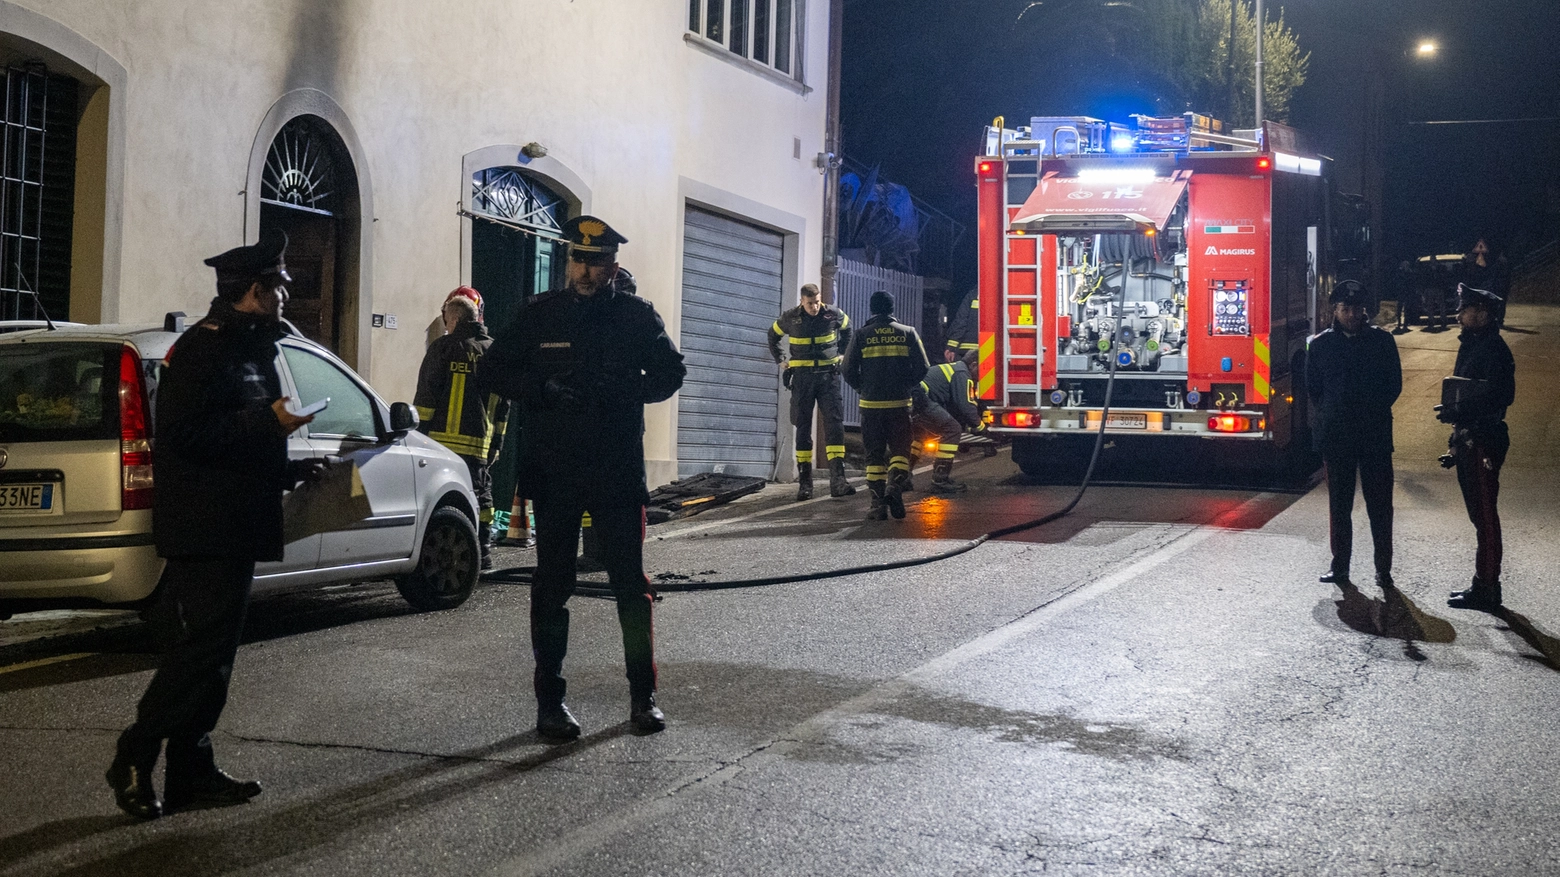 Carabinieri e vigili del fuoco intervenuti dopo l'incendio nell'edificio a Osteria Nuova (Foto Germogli)